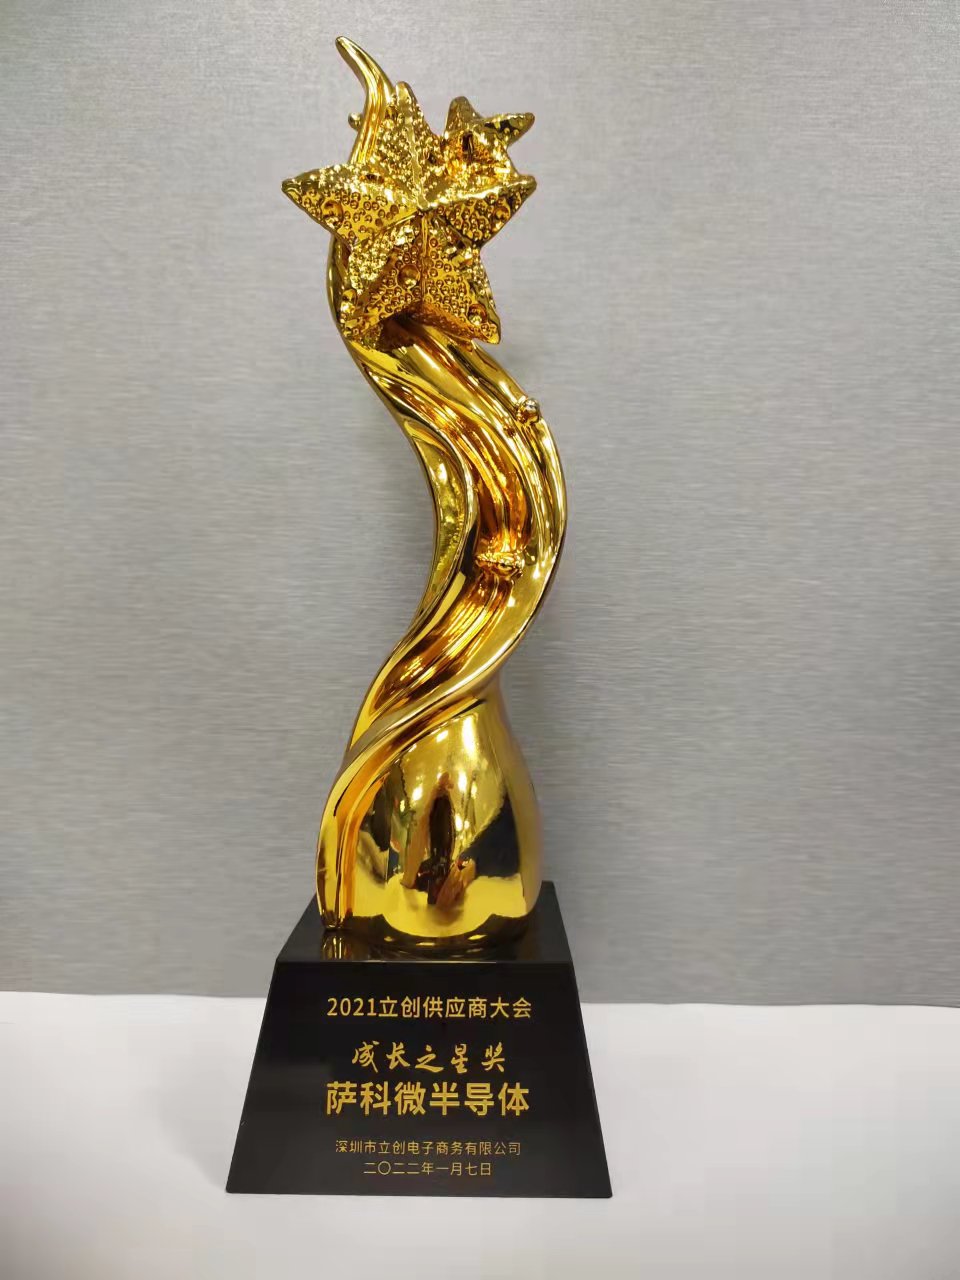 Il "Growing Star Award" della Conferenza dei fornitori di Lichuang del 2021